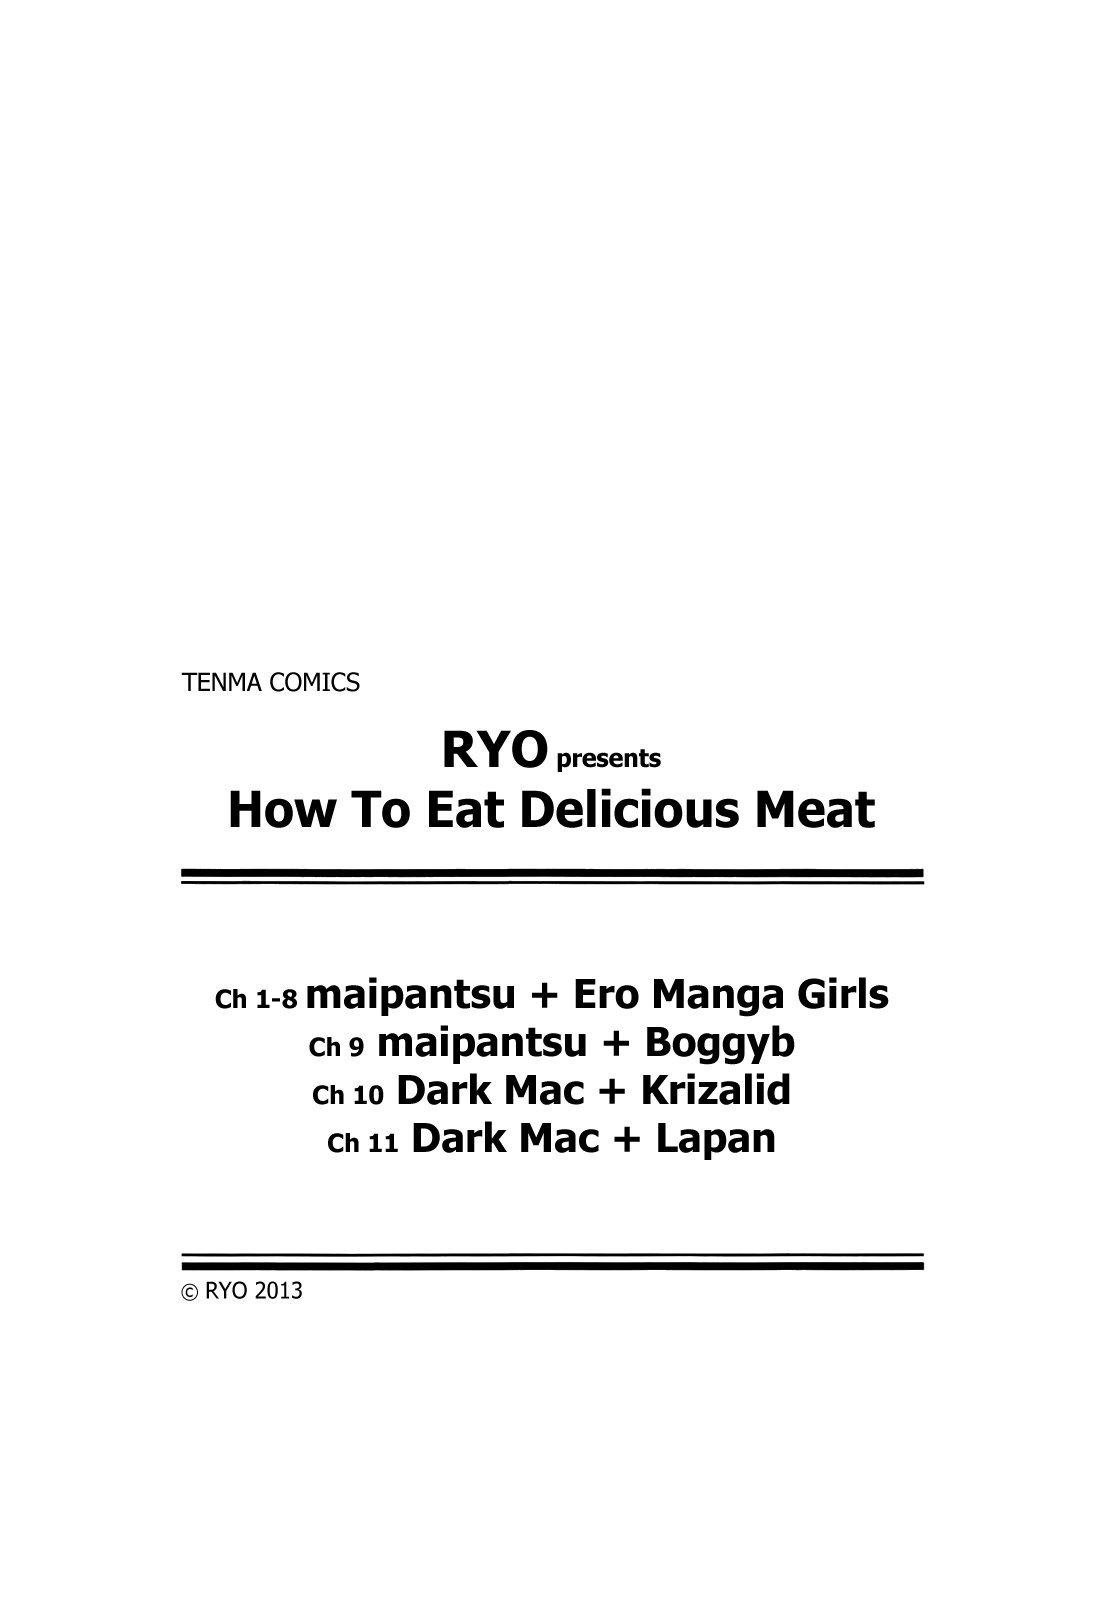 大石鬼のメシアガリカタ|美味しいお肉の食べ方